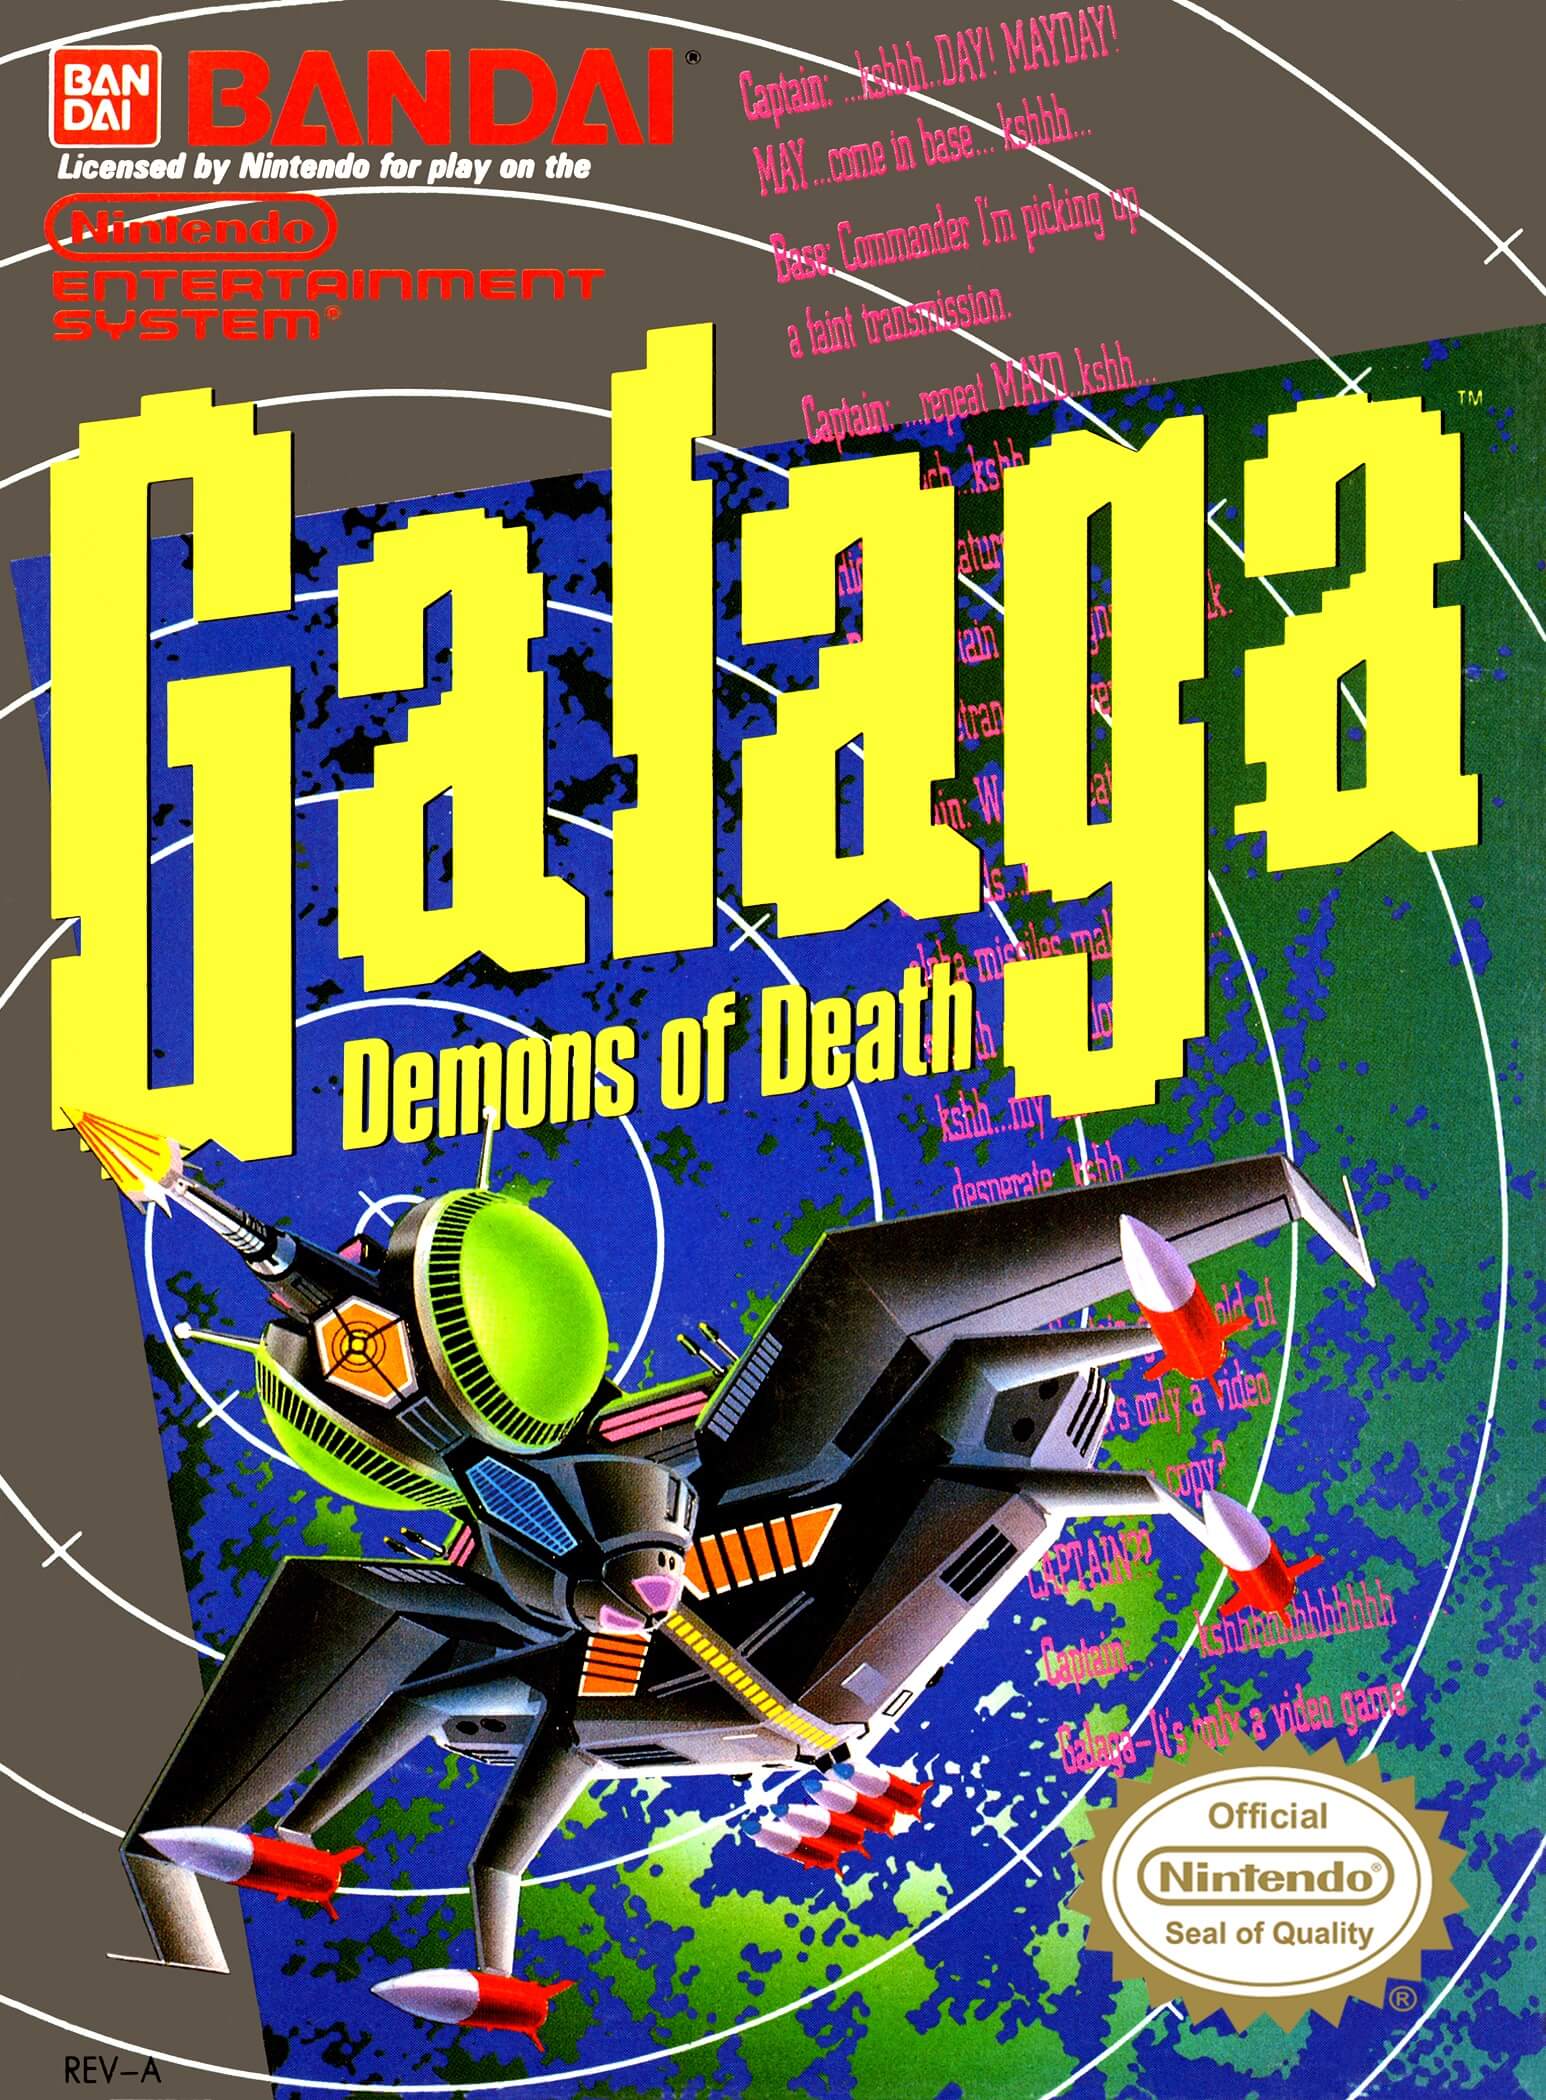 Galaga: Demons of Death